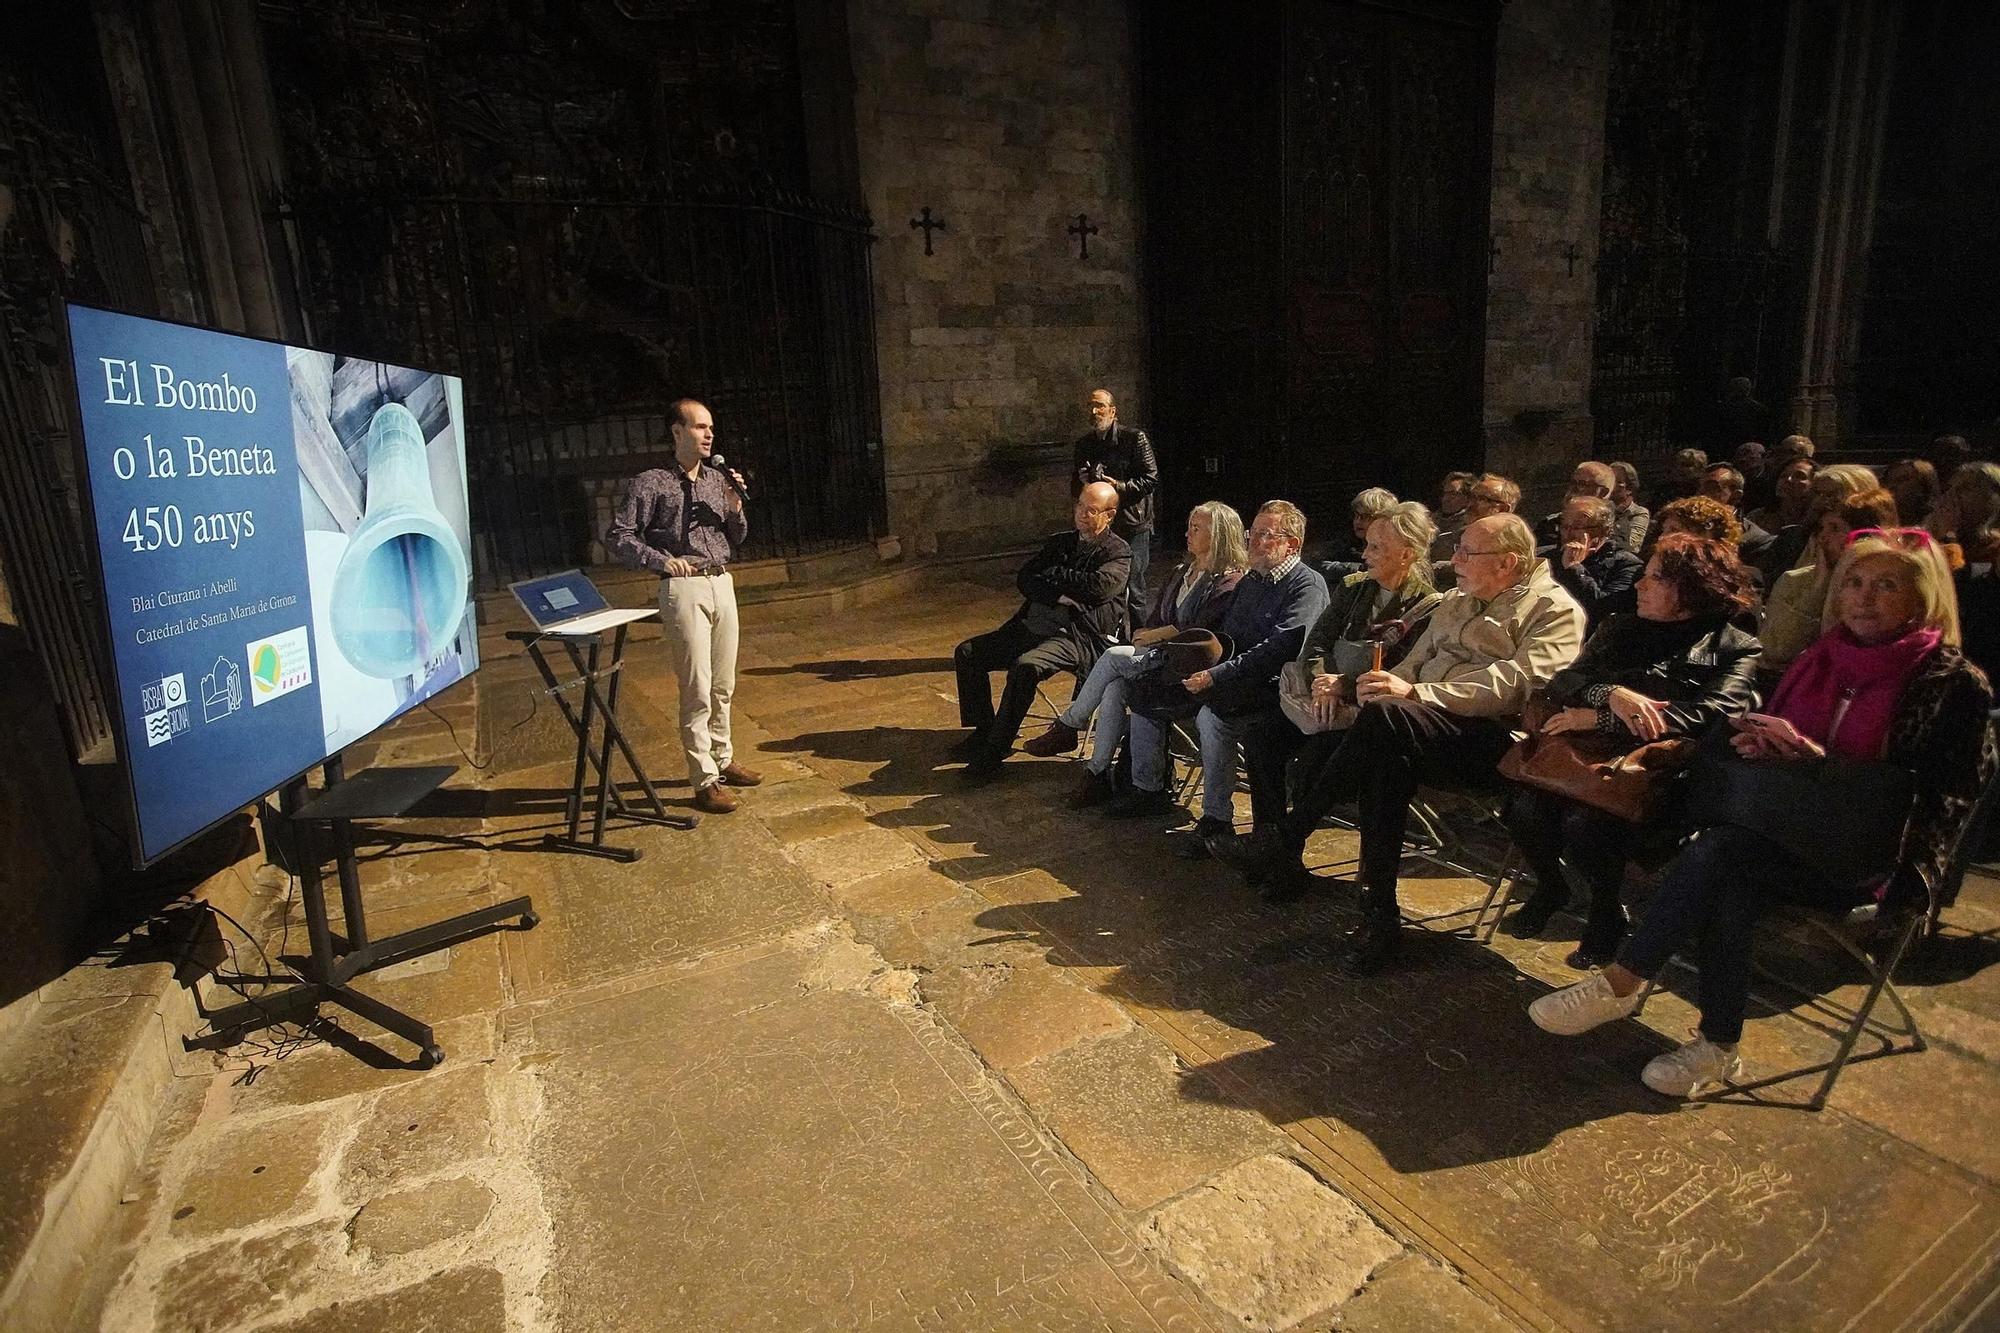 L’hipnòtic do sostingut de la campana Beneta de la Catedral de Girona